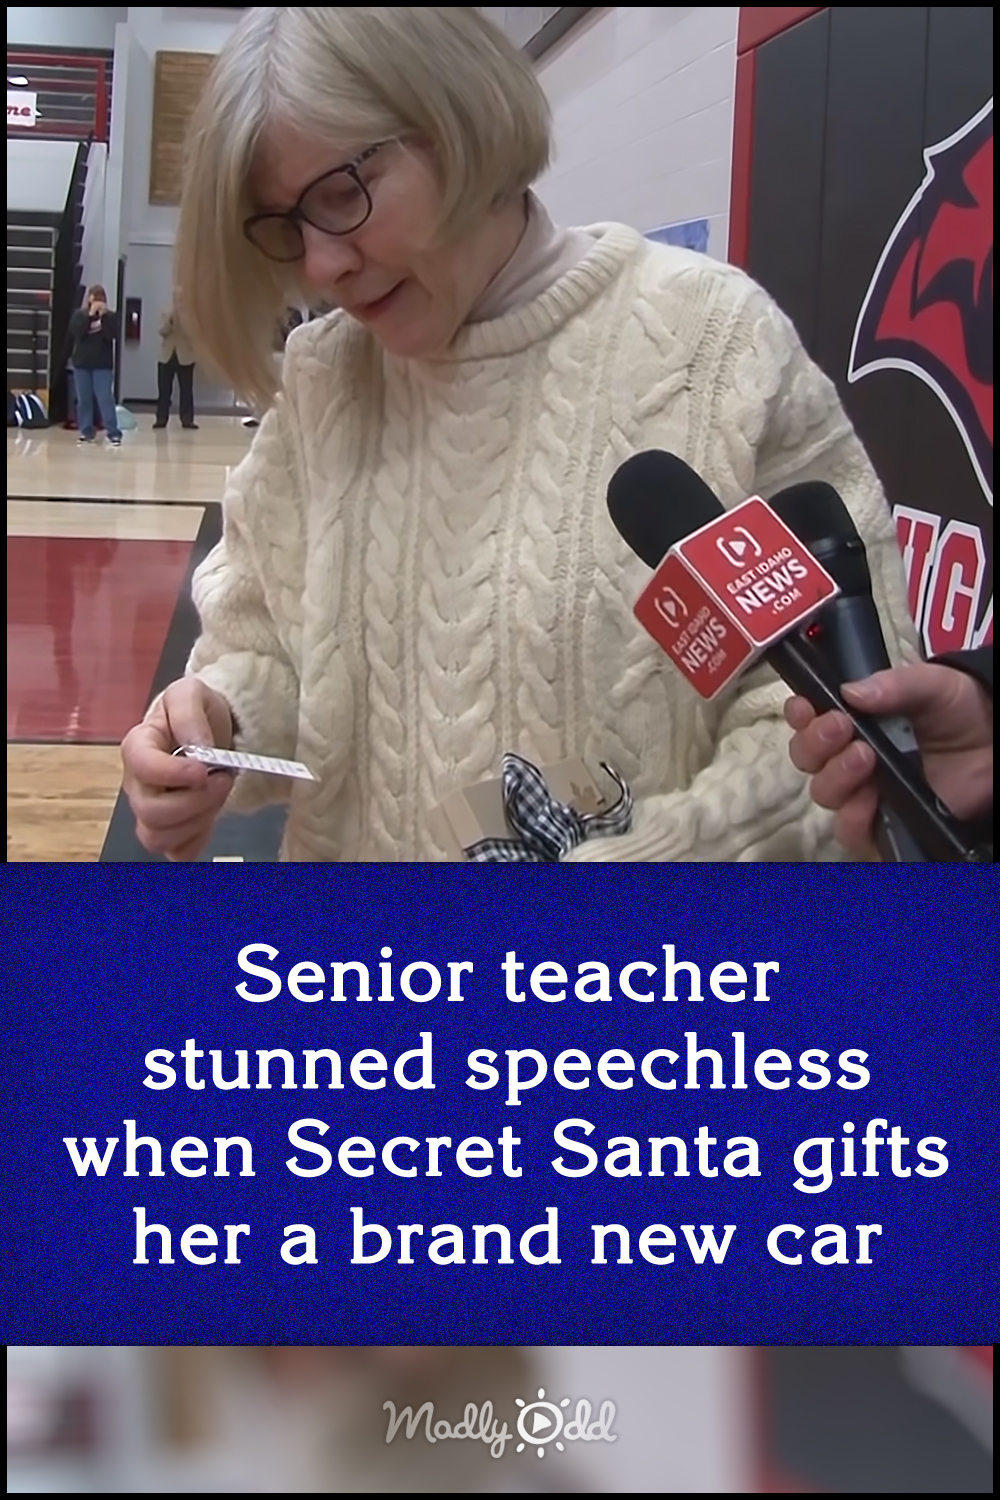 Senior teacher stunned speechless when Secret Santa gifts her a brand new car